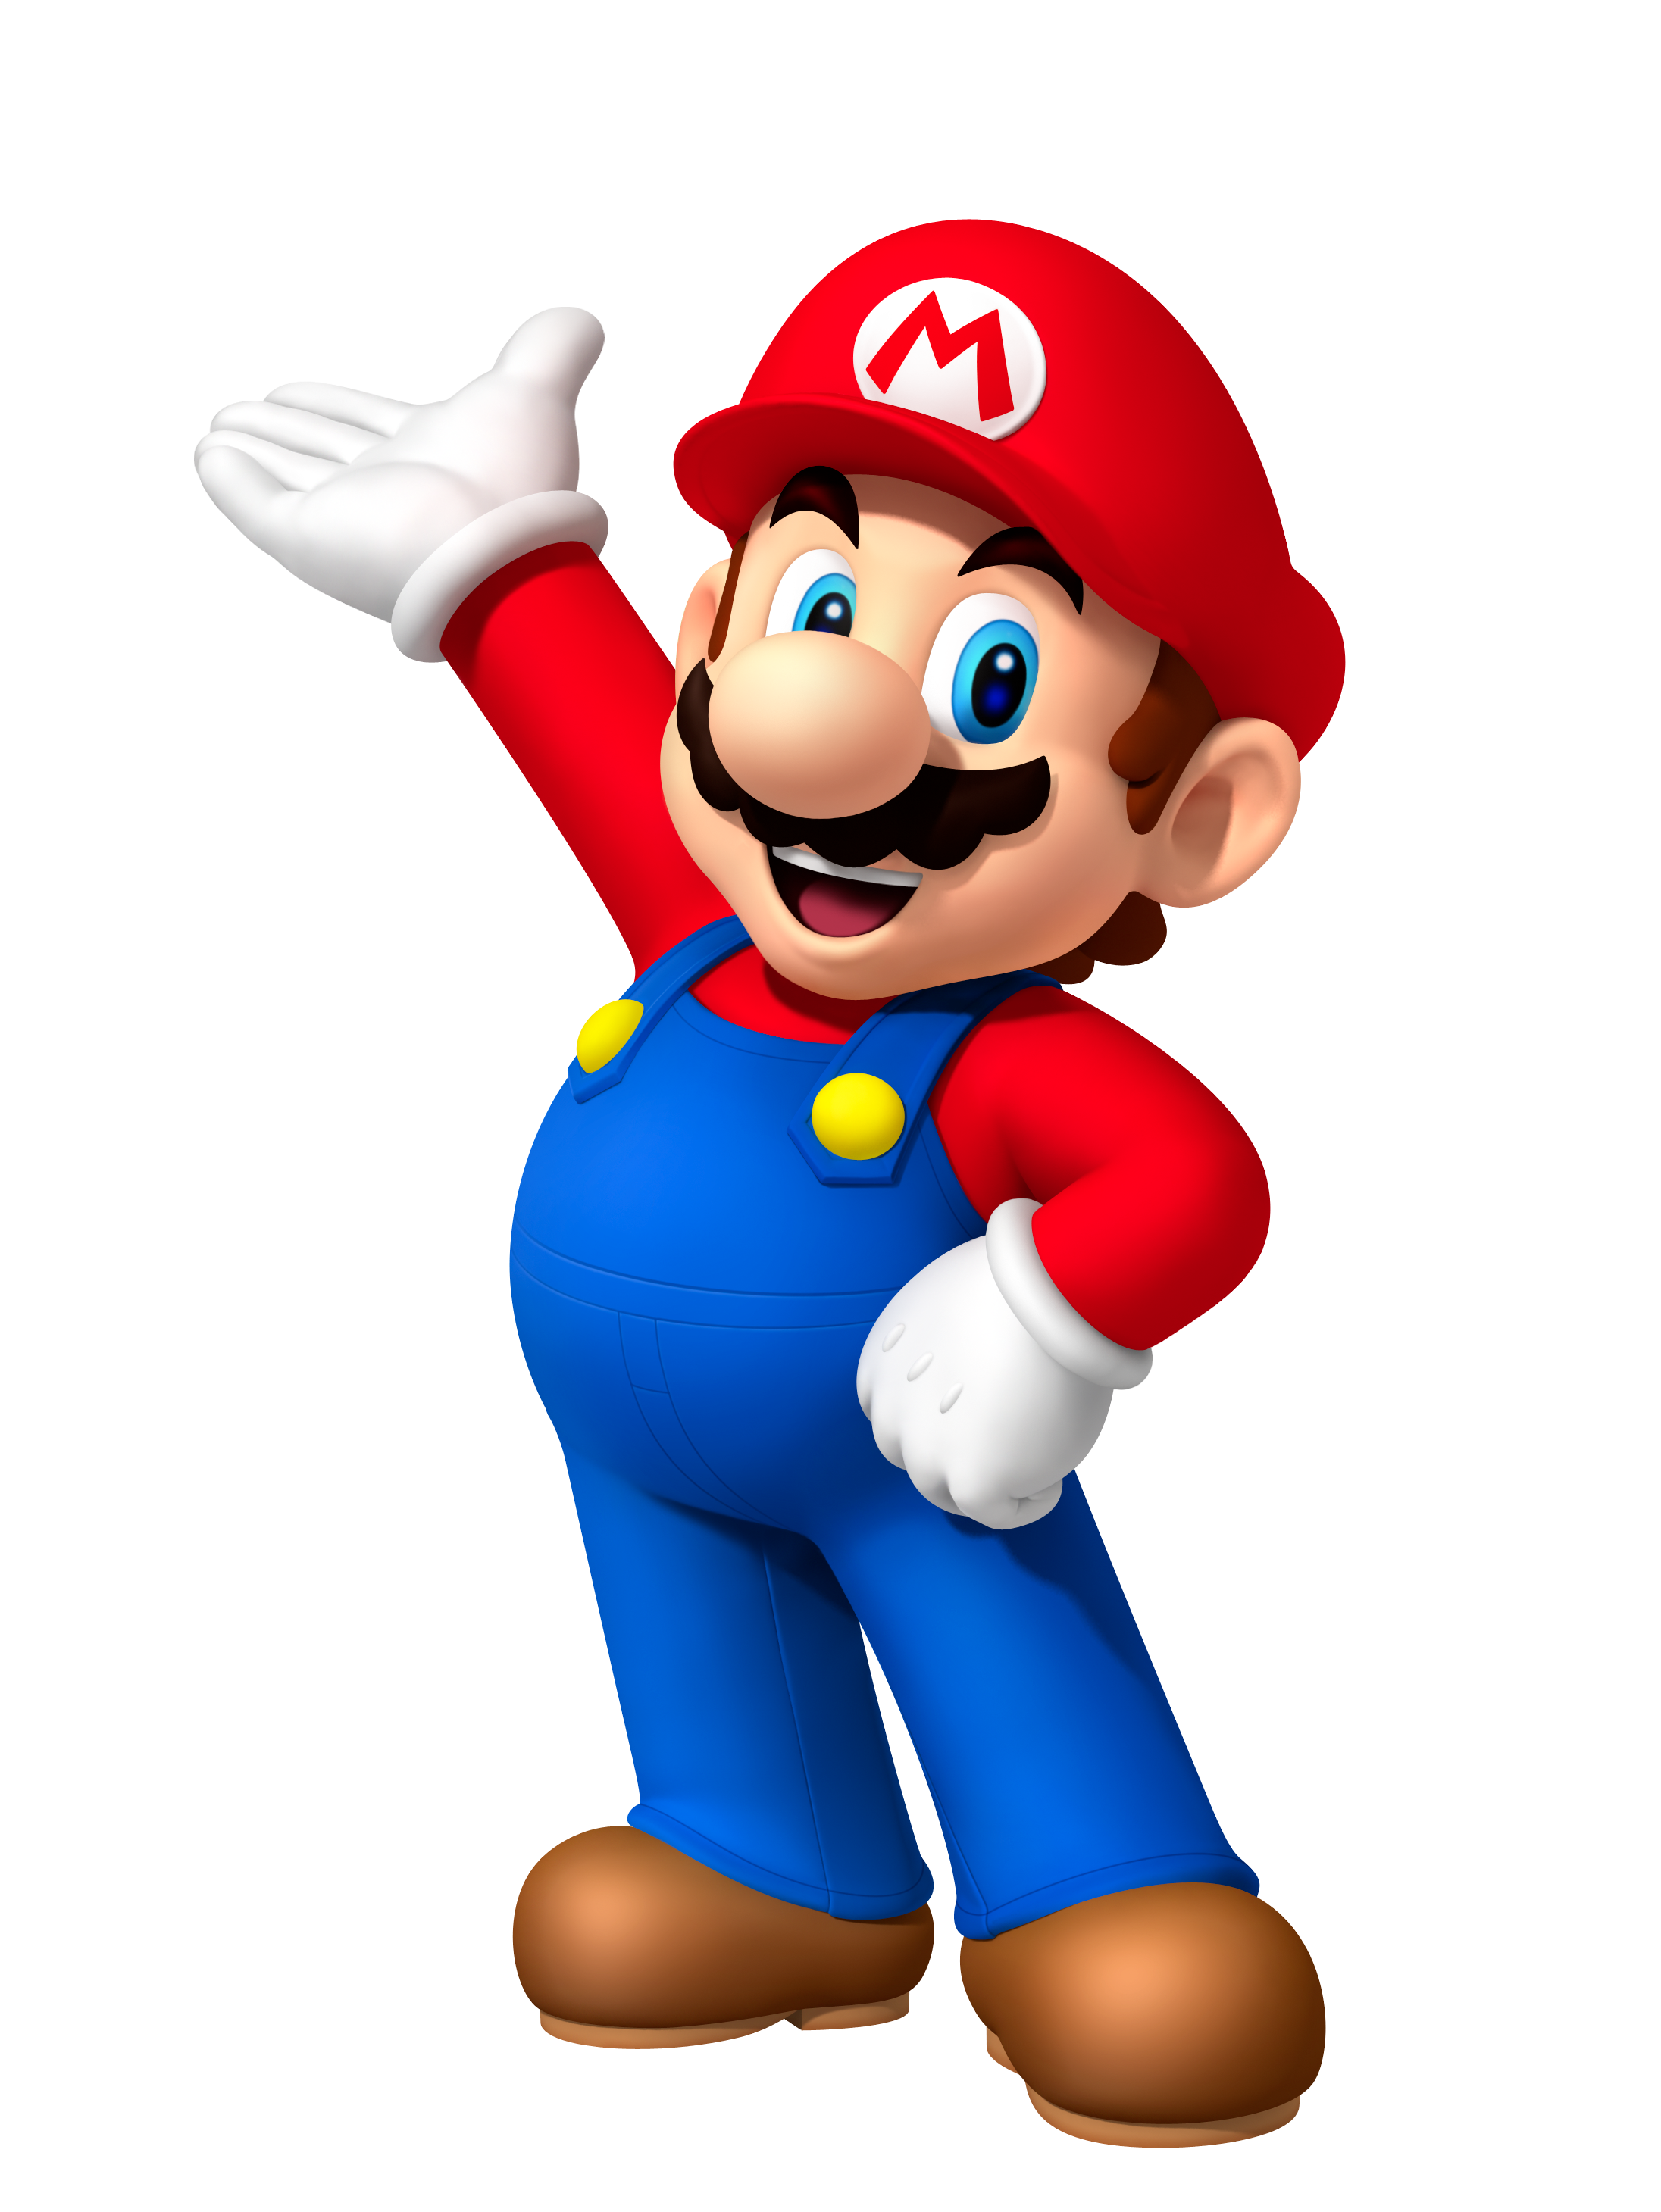 Gallery:Super Mario 3D All-Stars - Super Mario Wiki, the Mario